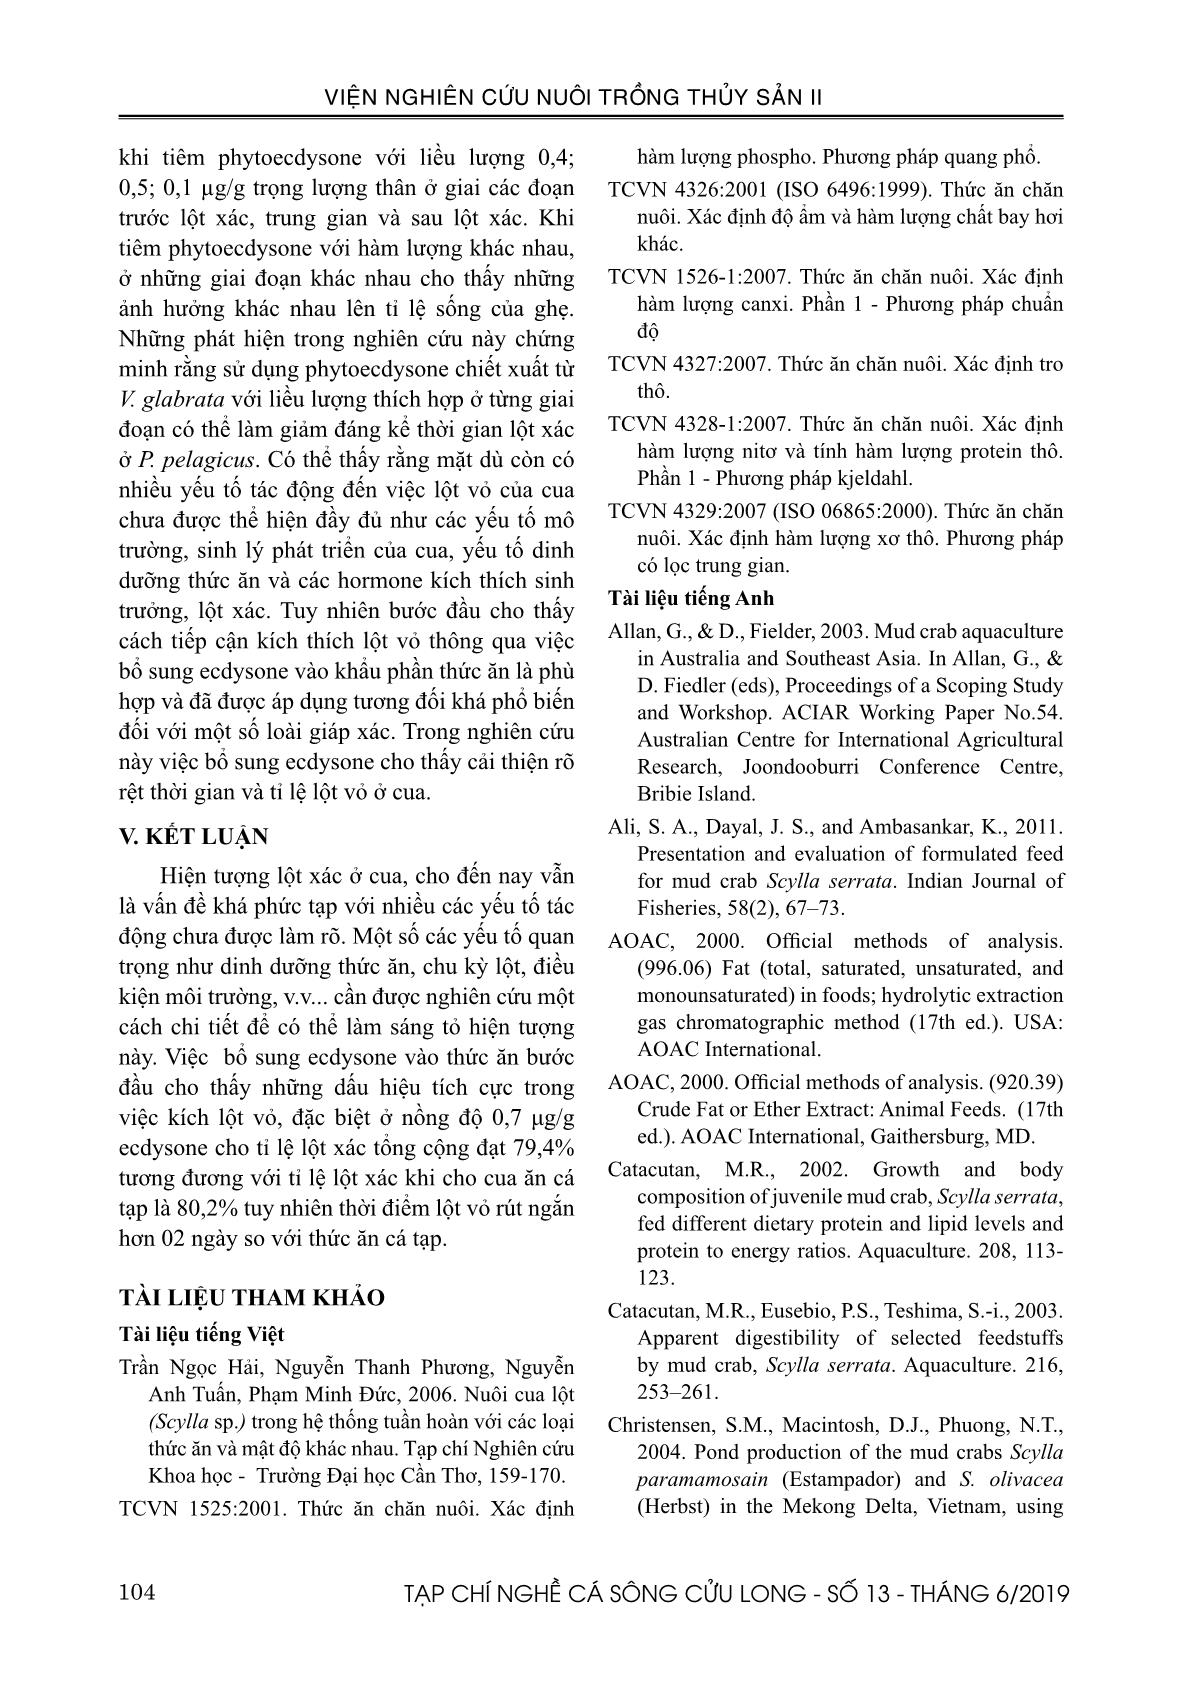 Nghiên cứu bổ sung chế phẩm Ecdysone tạo cua (Scylla serrata) lột trang 9